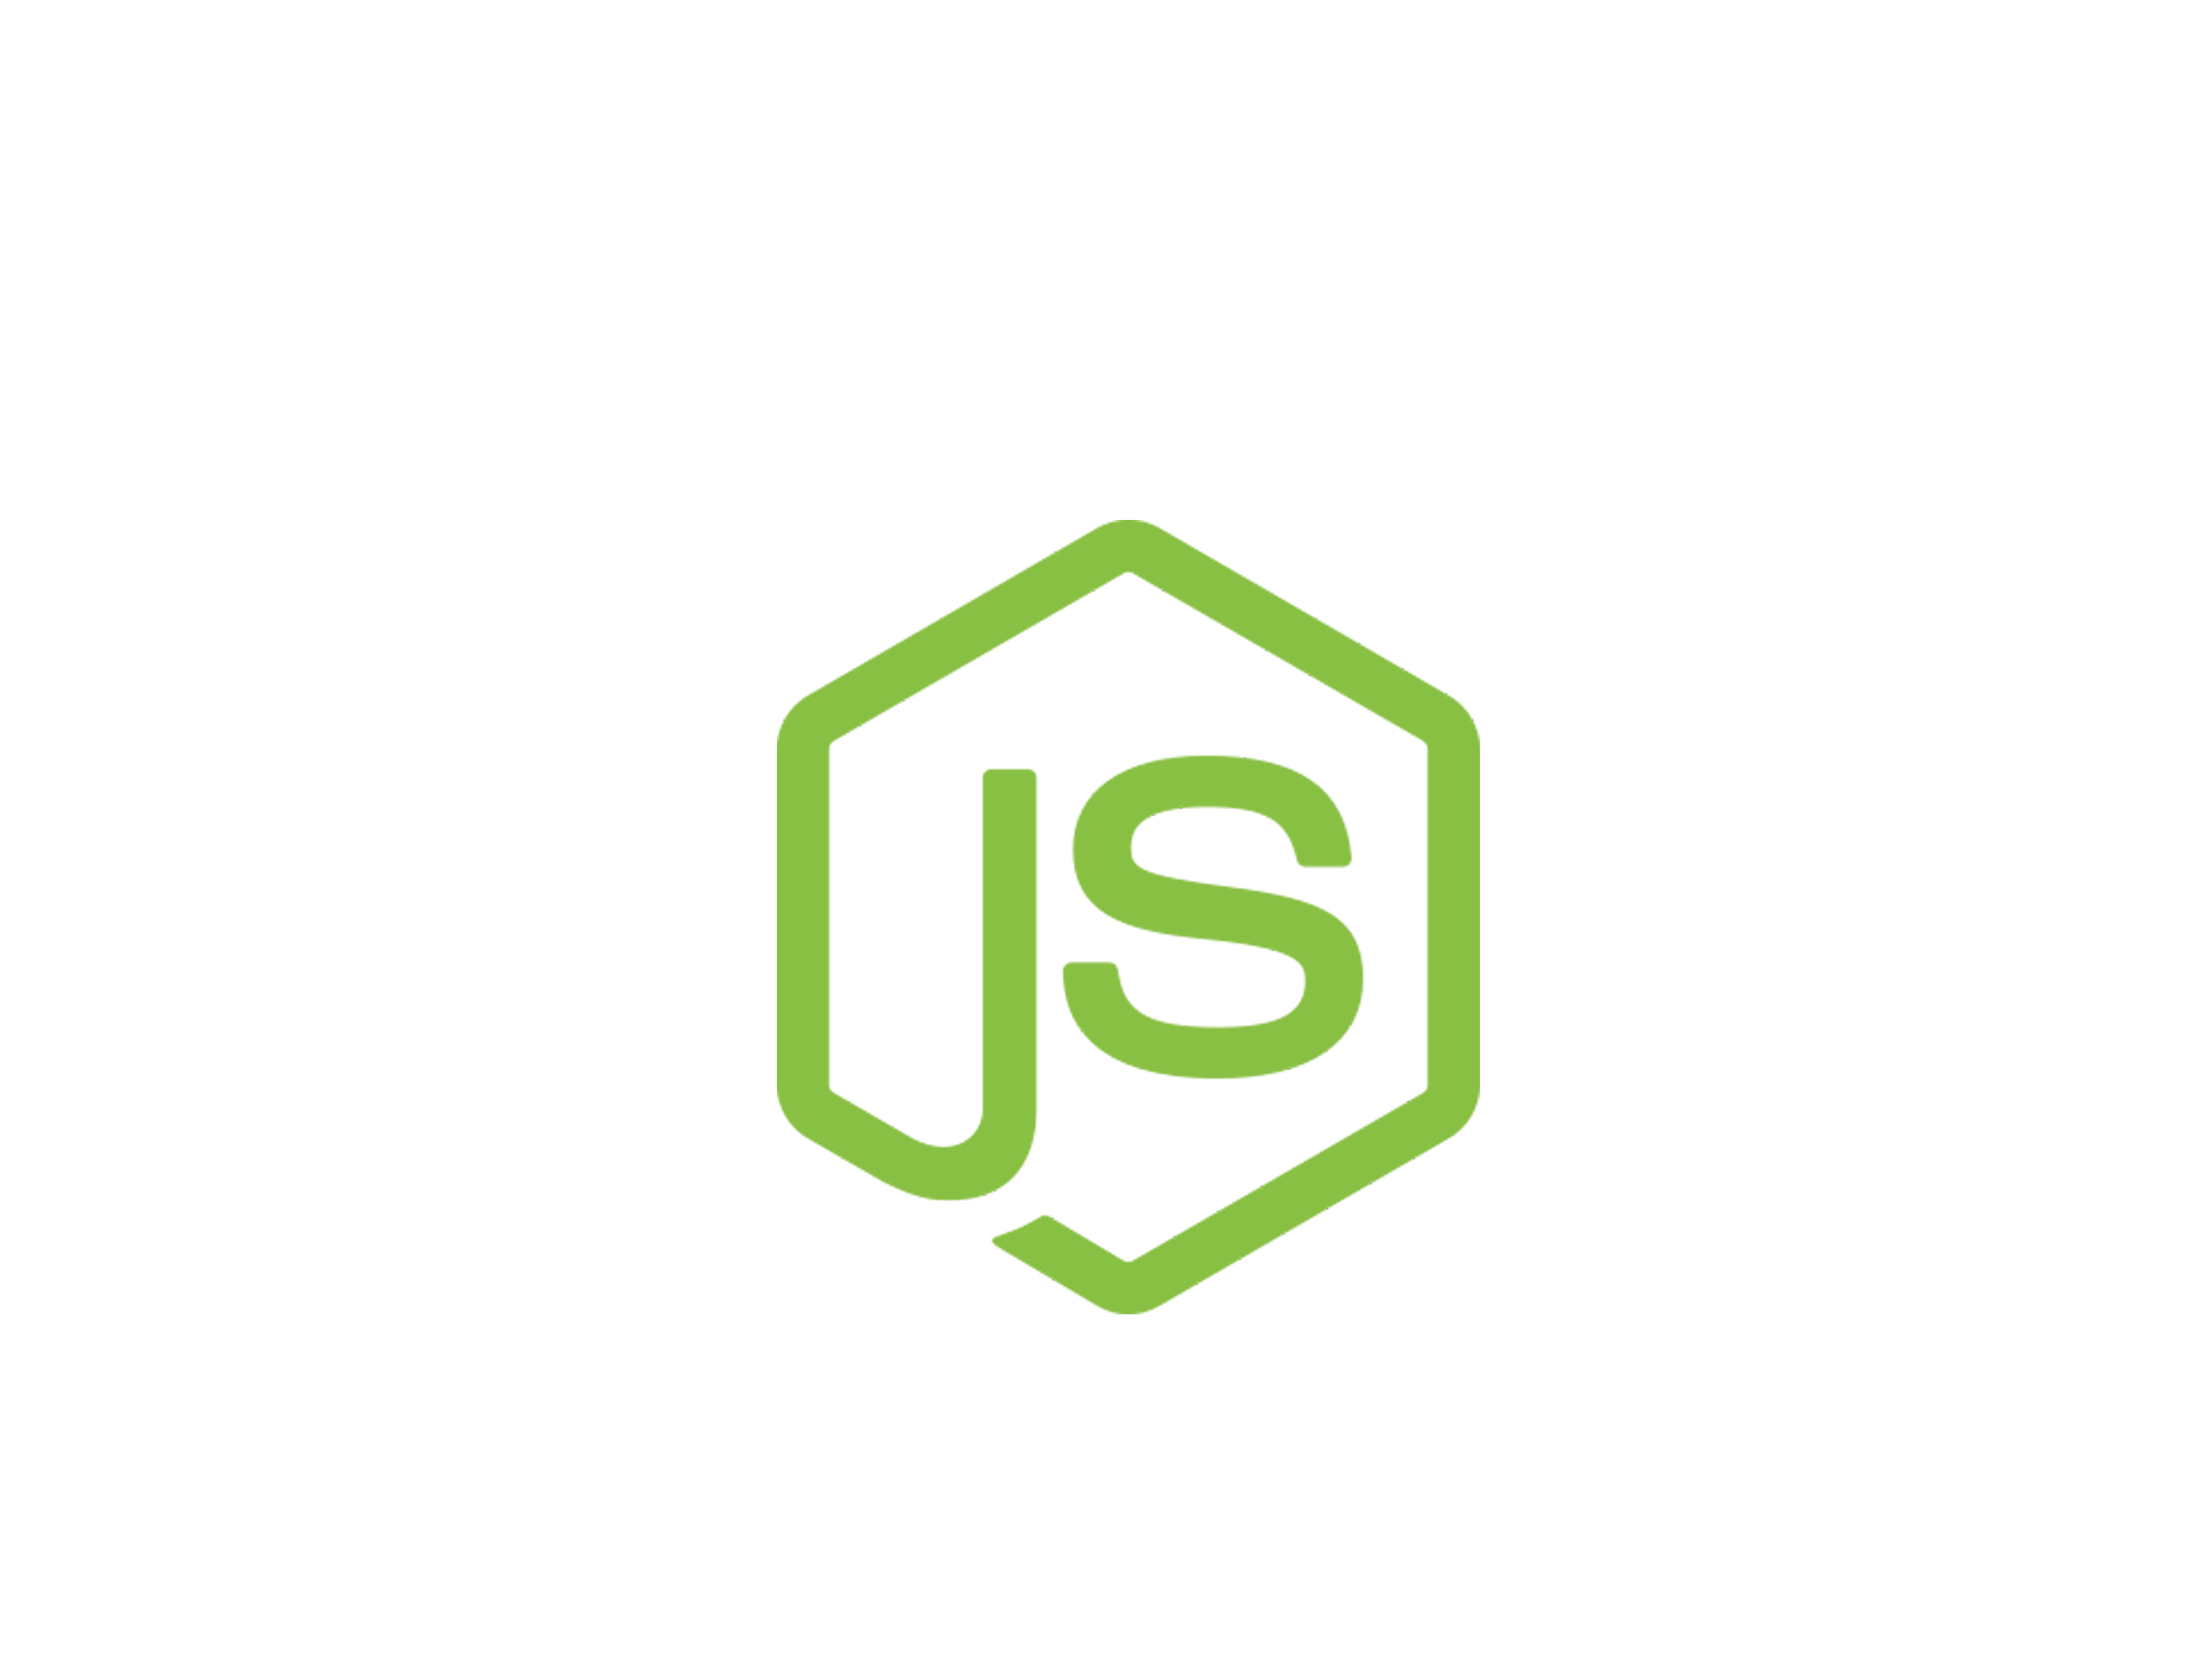 Flat js. Node js значок. Логотип node js PNG. Node.js язык программирования. Node js js.